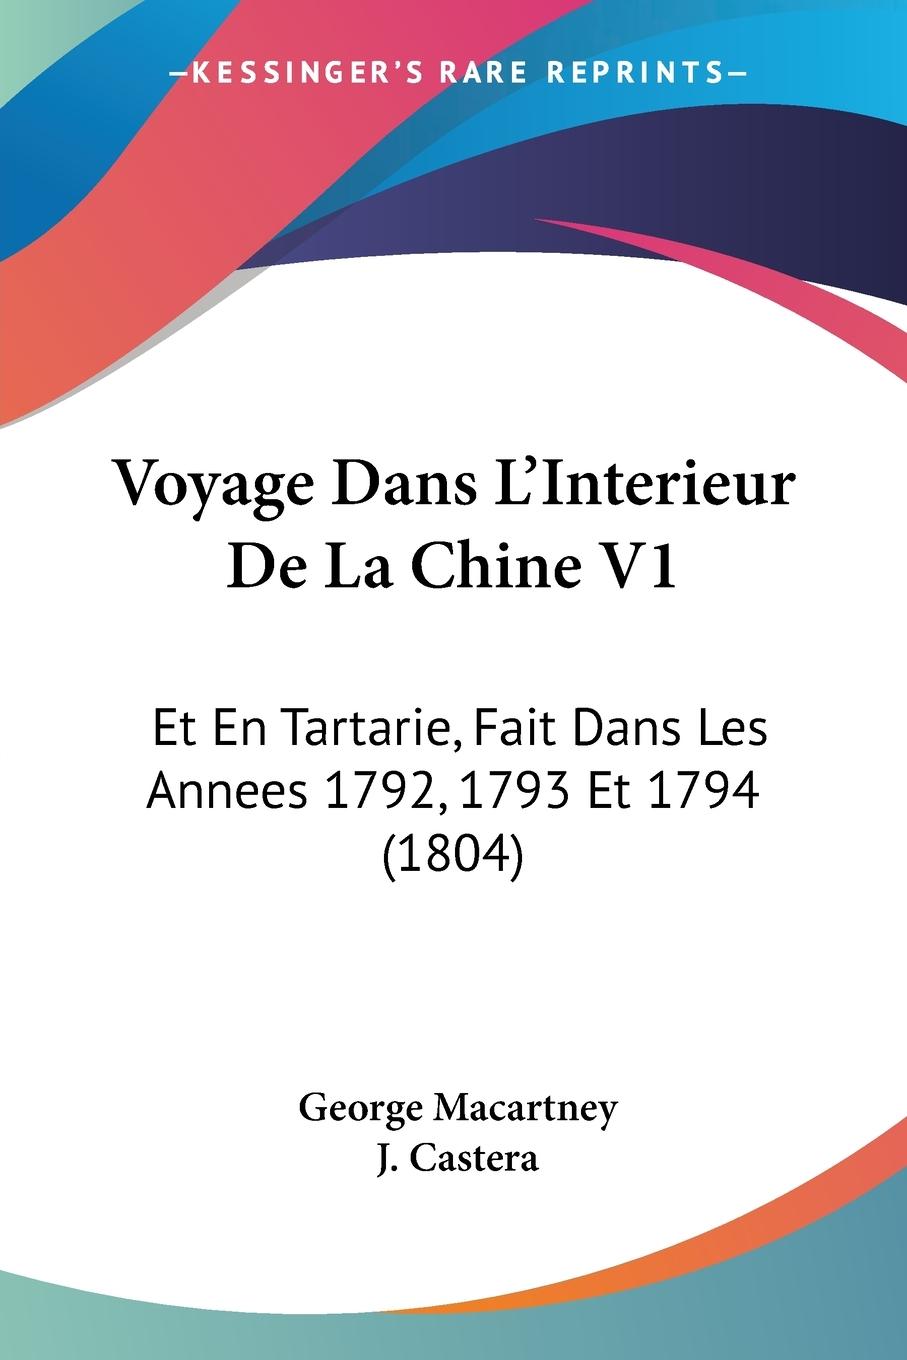 Voyage Dans L Interieur De La Chine V1 - Macartney, George Castera, J.